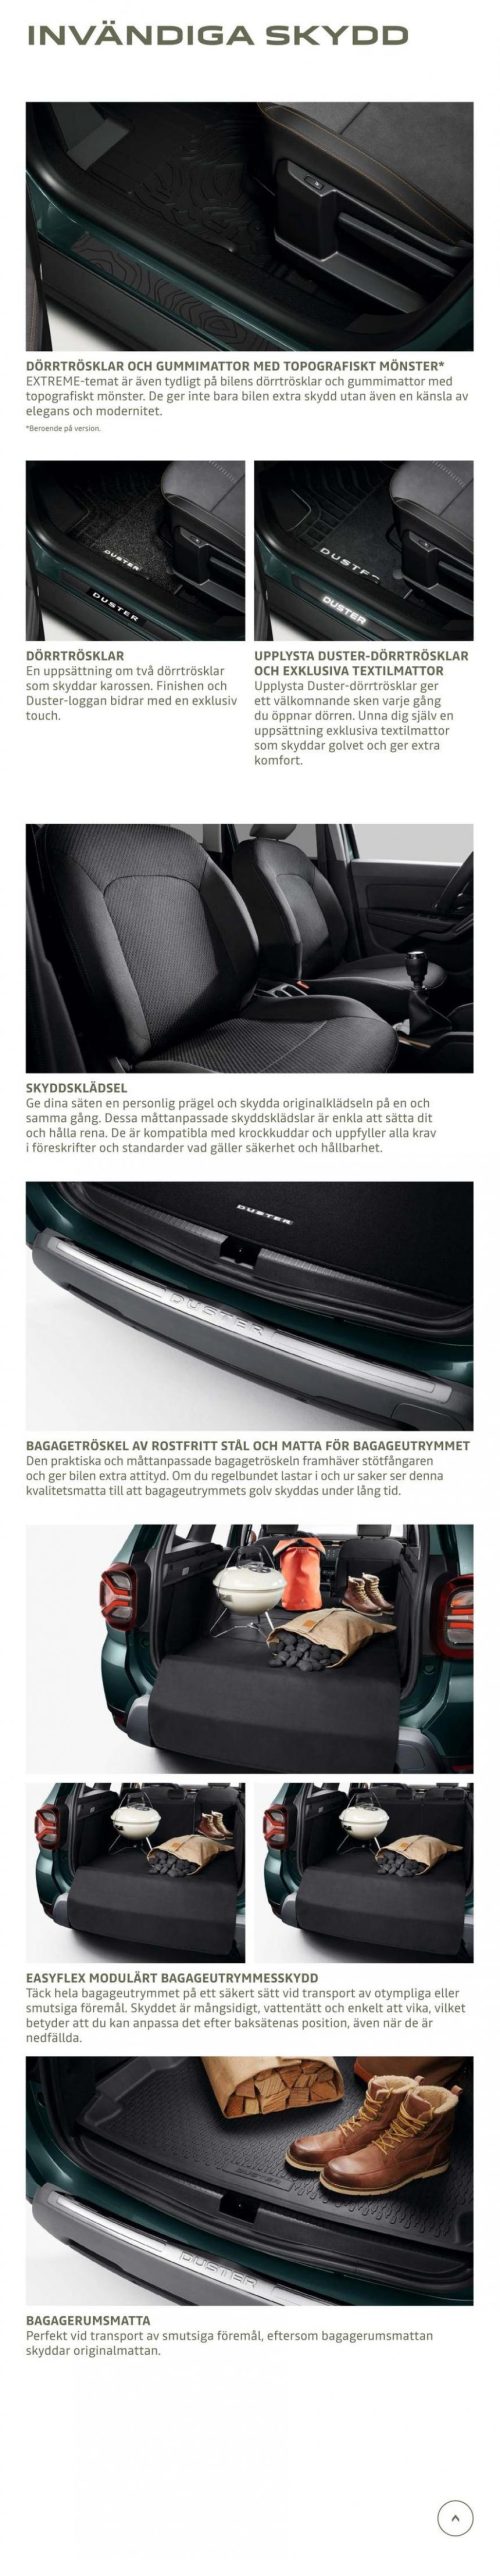 Dacia Duster - Tillbehörskatalog. Page 8